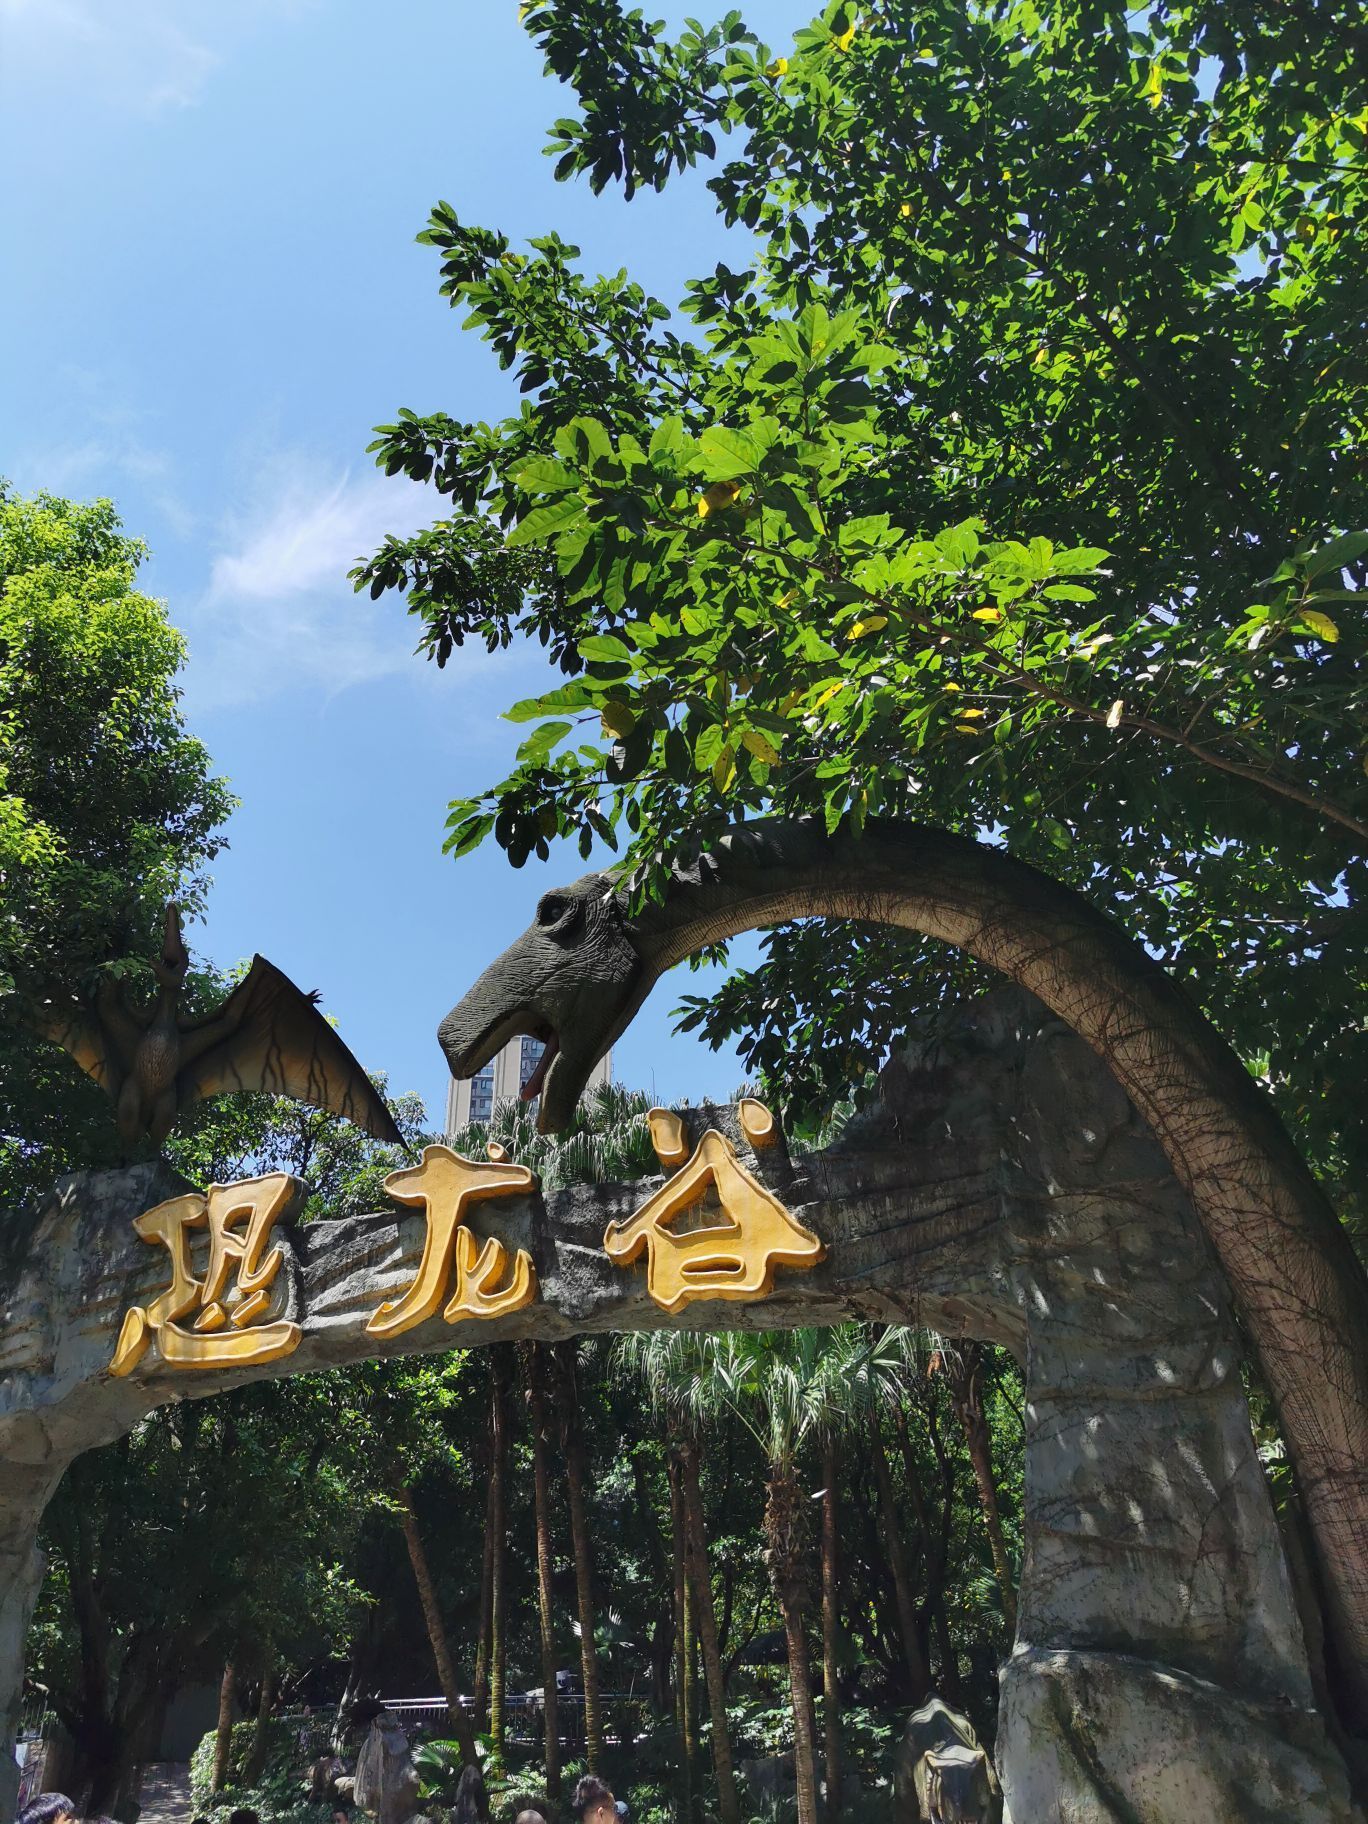 【携程攻略】重庆重庆动物园景点,重庆动物园面积挺大的，进门就是熊猫馆，大大小小的熊猫憨态可掬，熊…